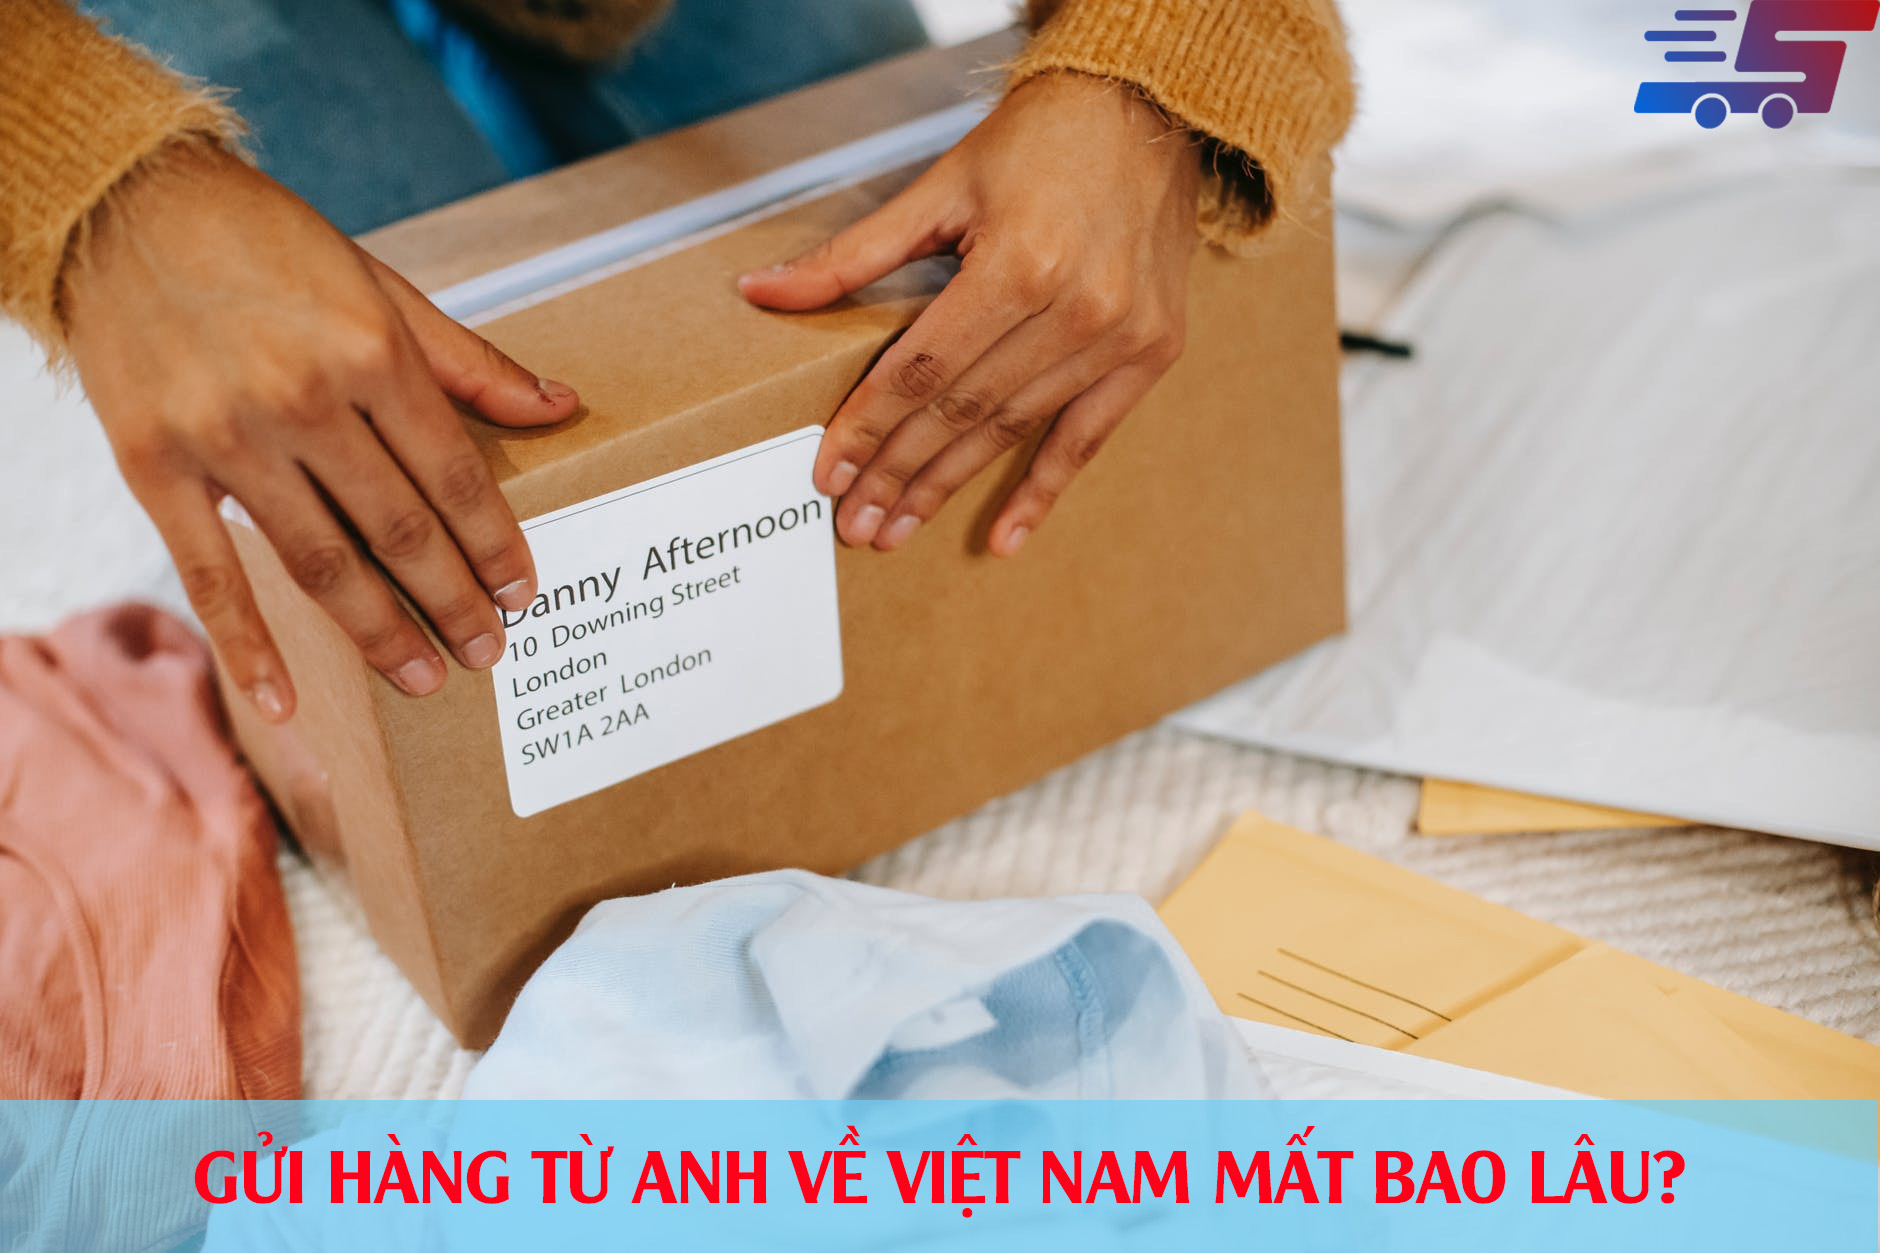 Gửi hàng từ Anh về Việt Nam mất bao lâu